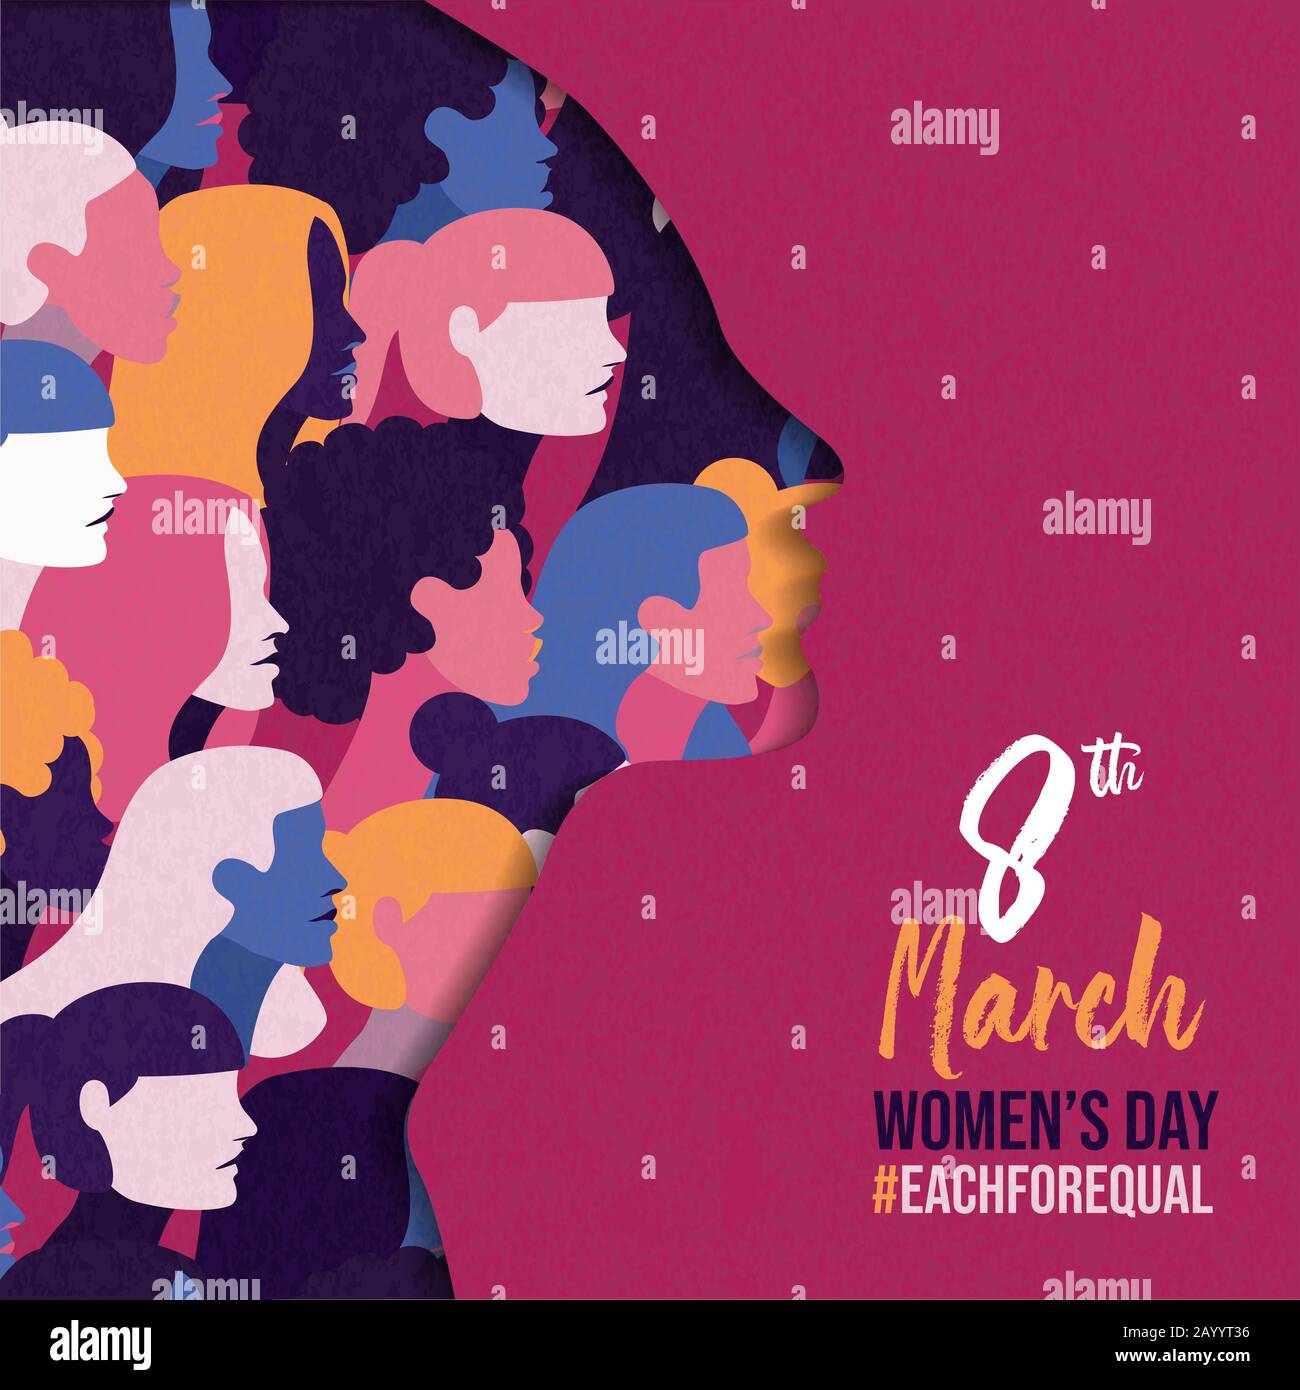 Internationaler Frauentag jeweils für gleiche Kampagne Grußkarte der verschiedenen Kultur Frauengruppen. Darstellung der Veranstaltung "Female Rights Holiday". Stock Vektor